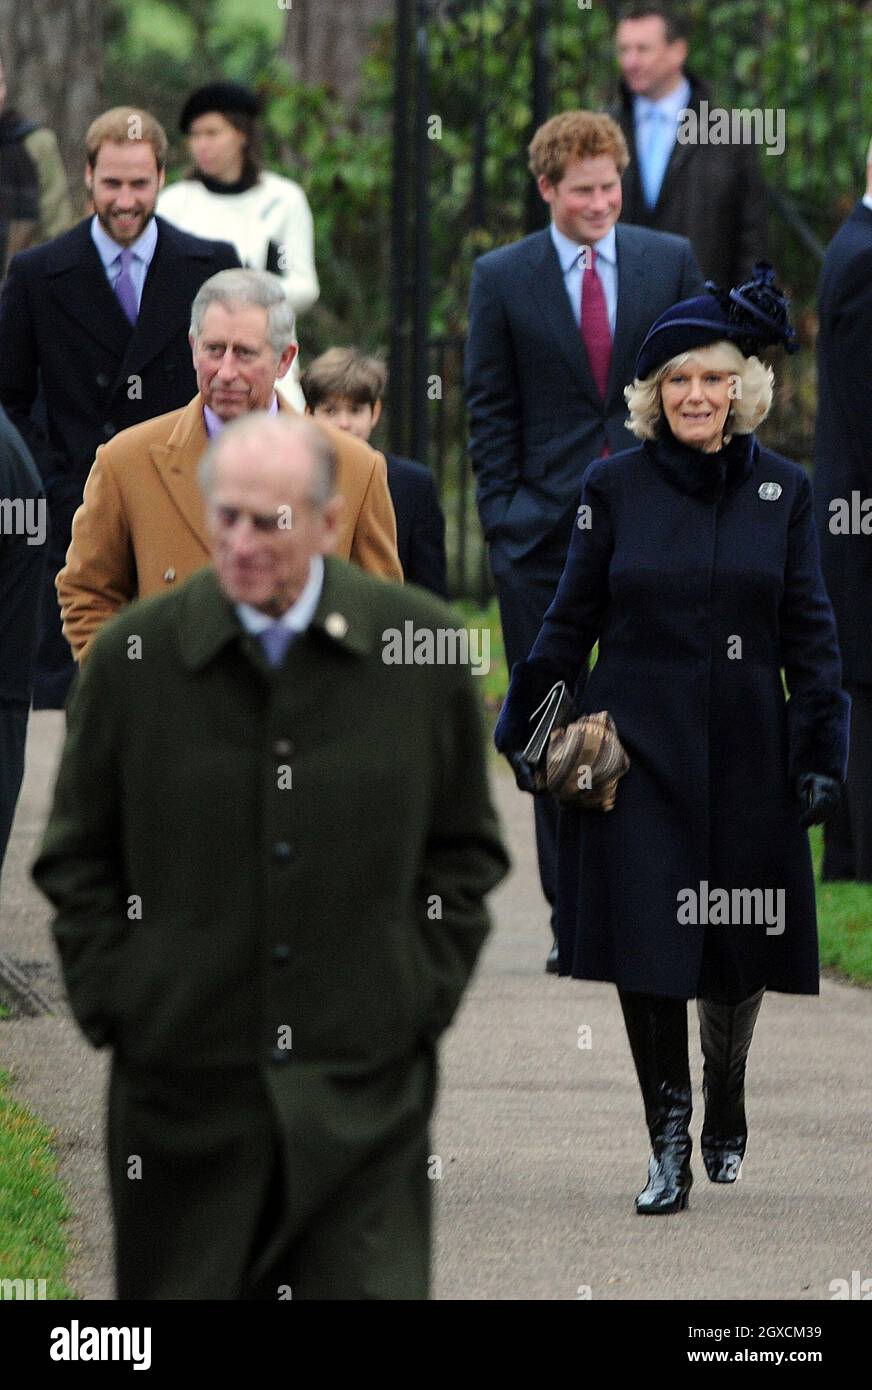 Prince William, Prince Harry, Prince Charles, Prince de Galles, Camilla,La duchesse de Cornouailles et le prince Philip, duc d'Édimbourg, assistent au service de Noël de l'église Sandringham, en Angleterre. Banque D'Images